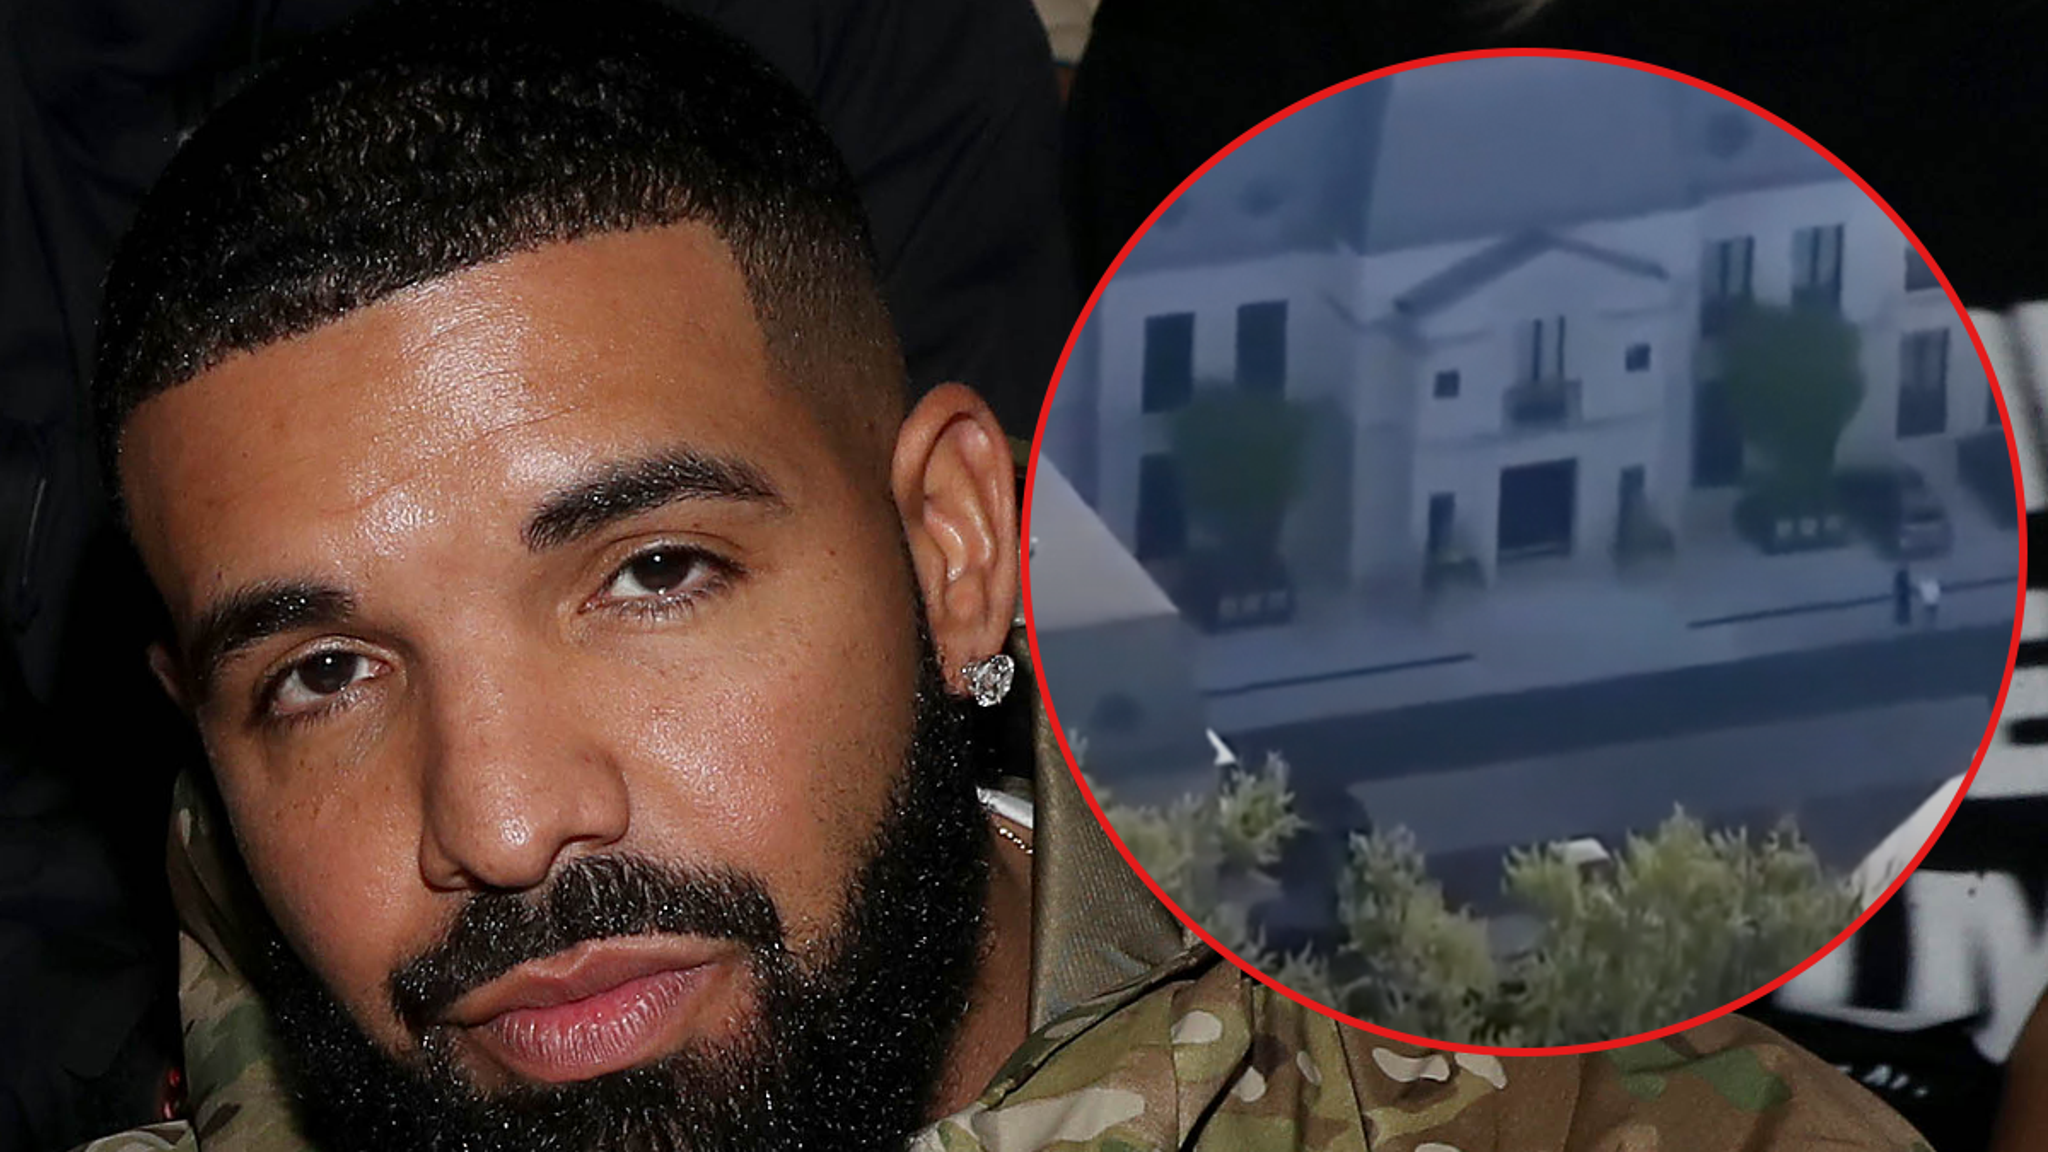 La casa de Drake en Toronto fue visitada por otra persona que supuestamente intentó entrar ilegalmente